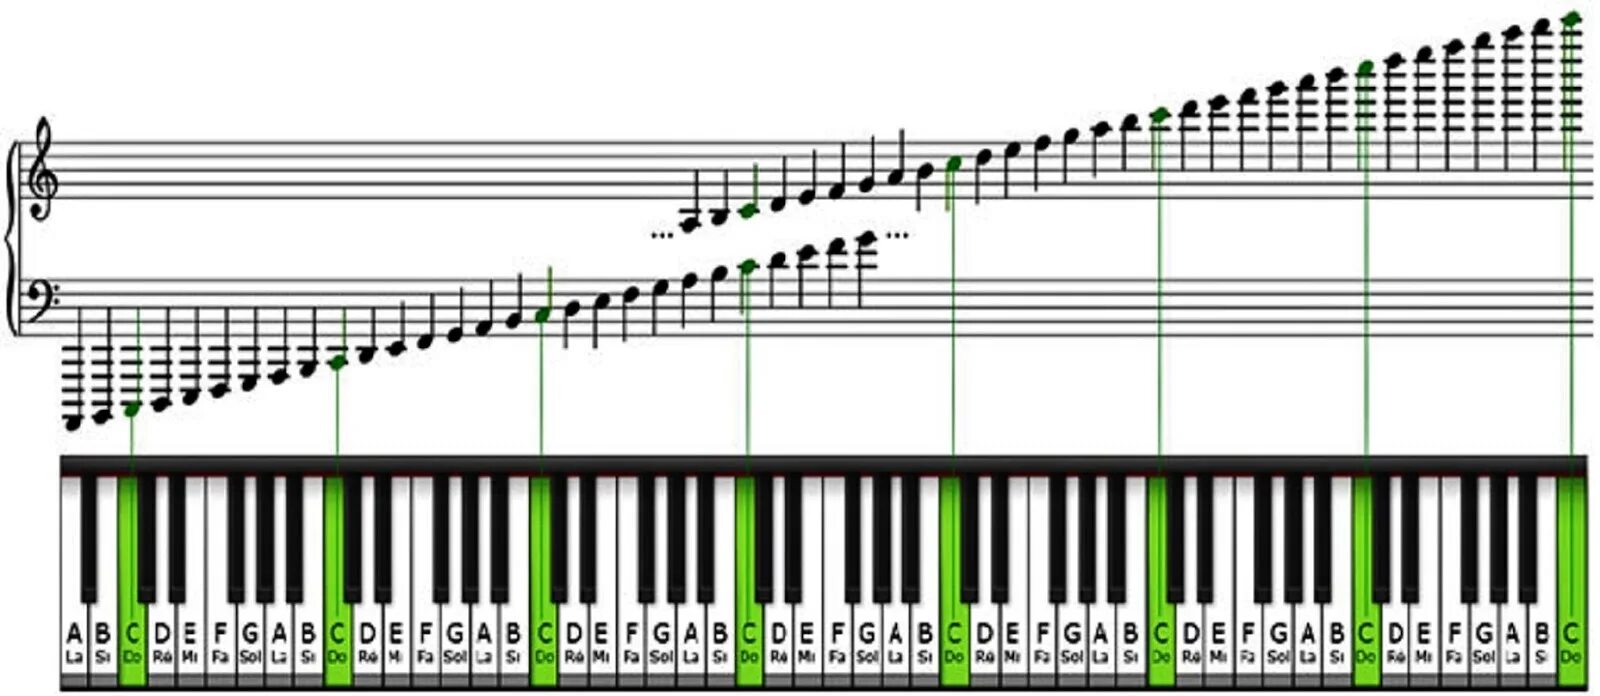 Какая октава первая. Ноты на синтезаторе 61 клавиша. Диапазон фортепиано октавы. Расположение нот на клавишах синтезатора 61 клавиша. Расположение нот на синтезаторе 61 клавиша.